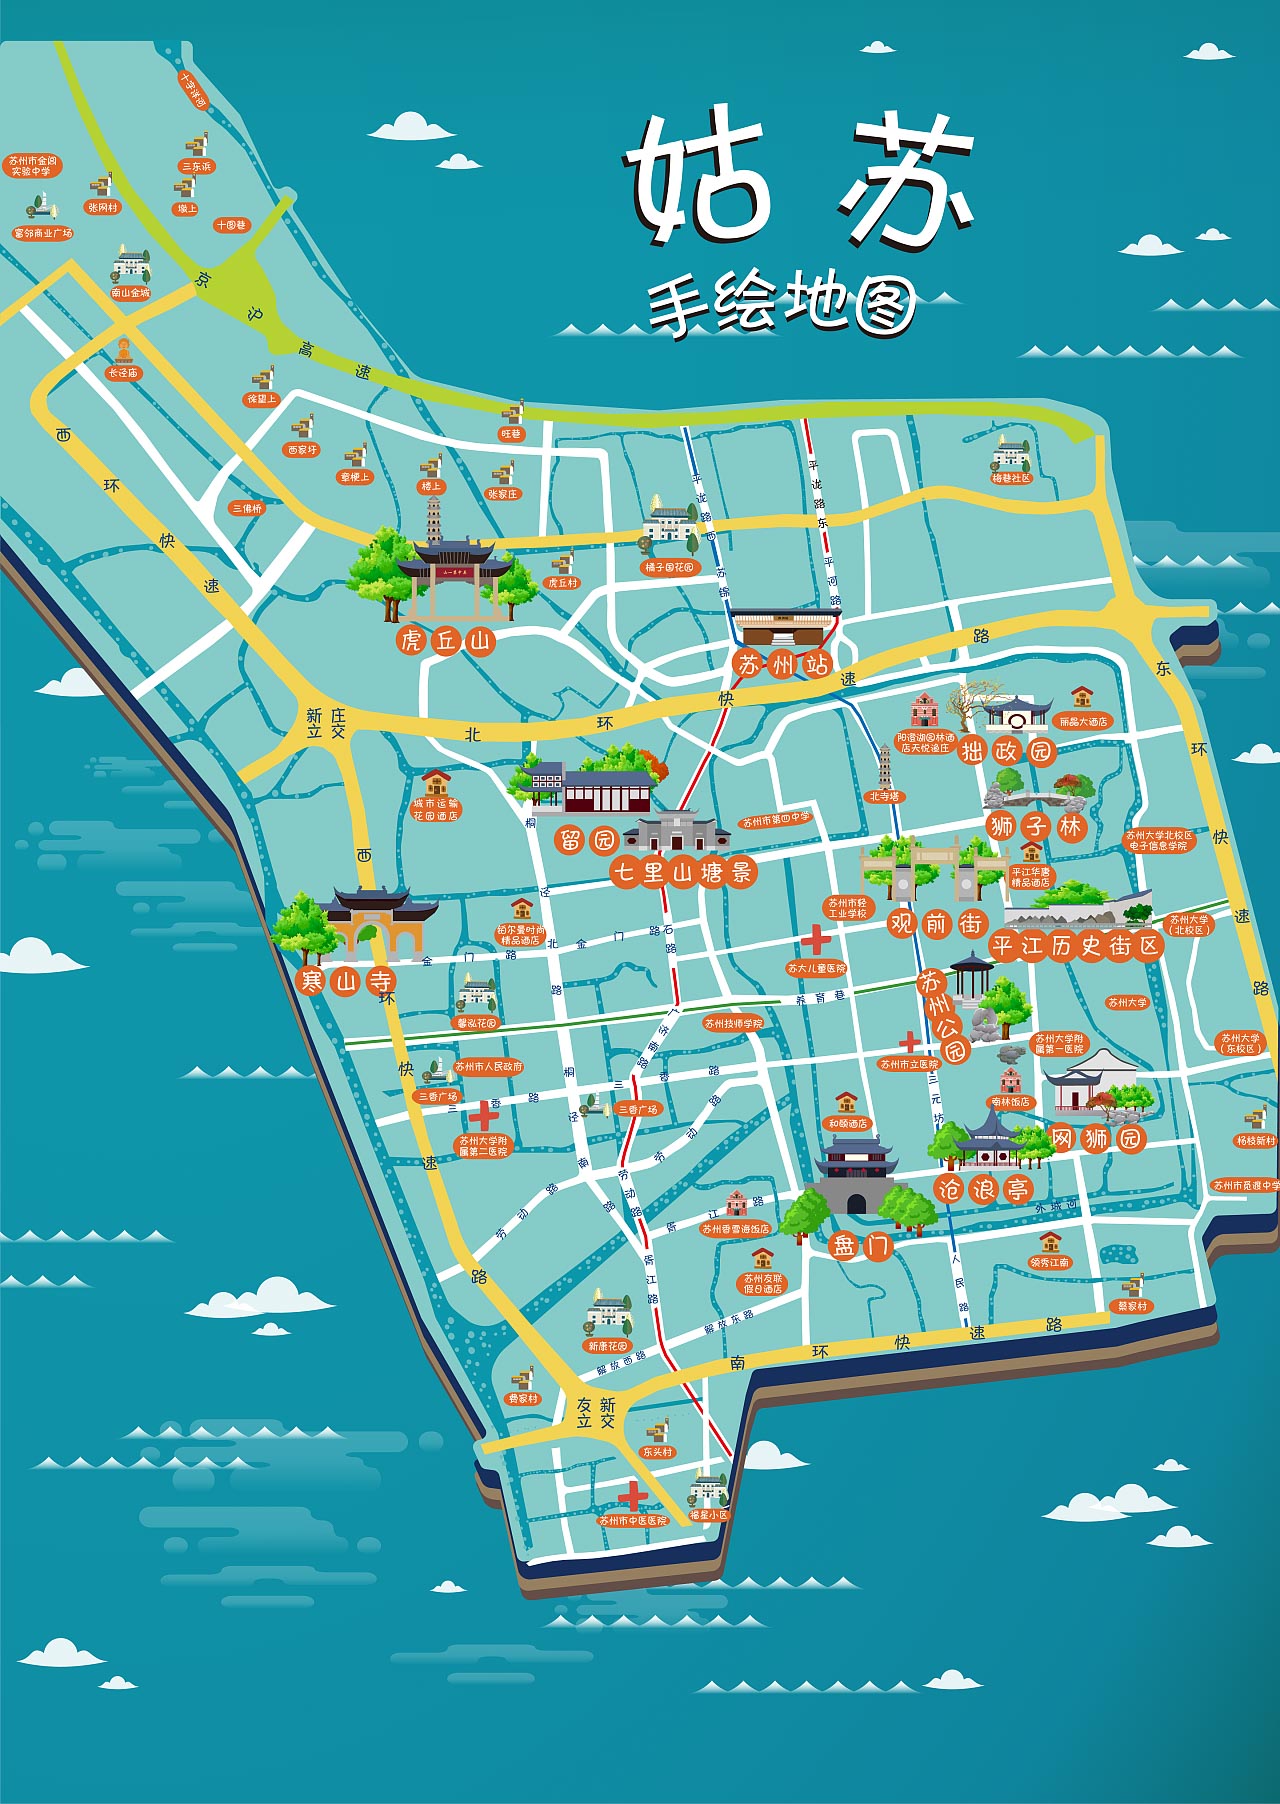 龙湾镇手绘地图景区的文化宝藏